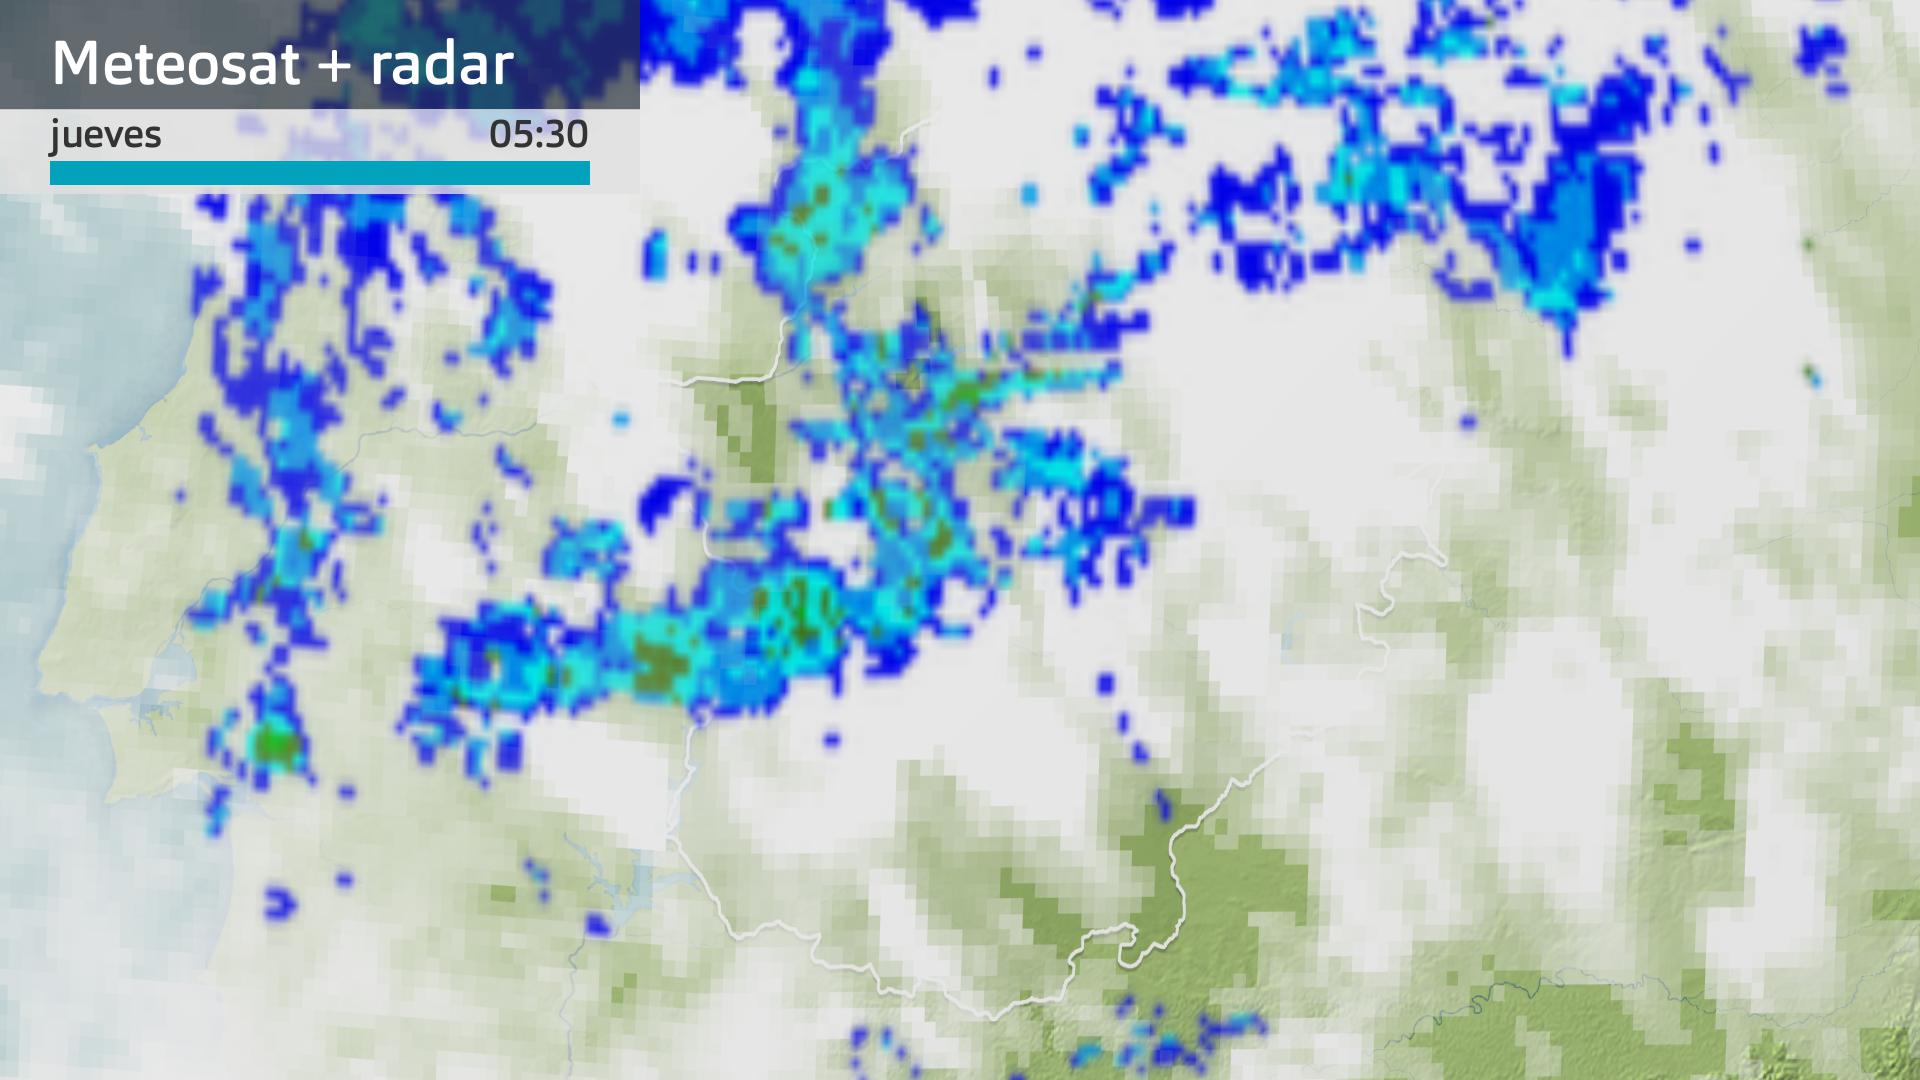 Imagen del Meteosat + radar meteorológico jueves 19 de octubre 5:30 h.